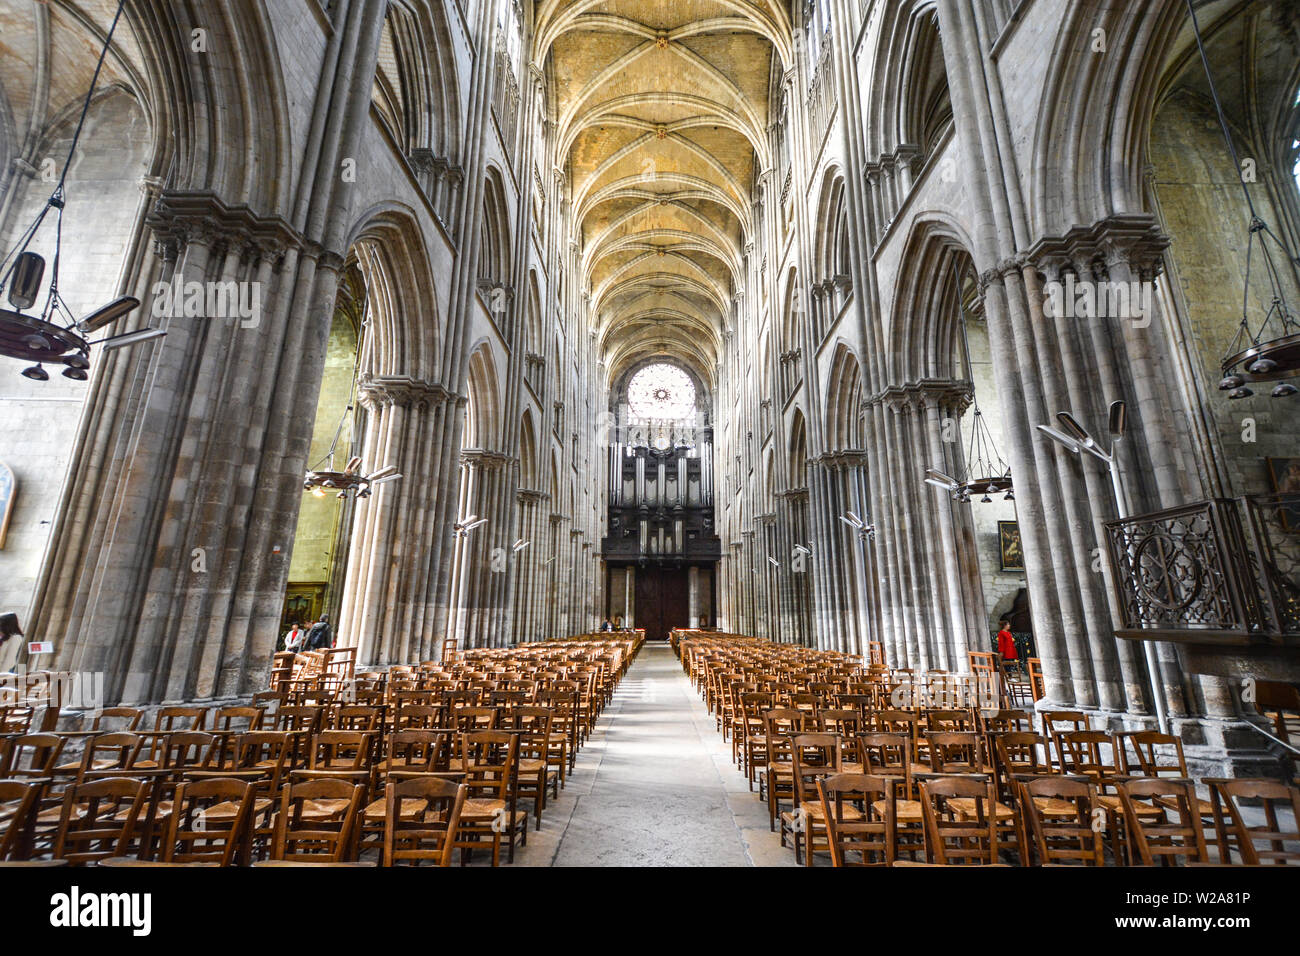 La nave en el interior de la Catedral de Rouen, Francia, con el rosetón detrás de Rouen en Francia Foto de stock